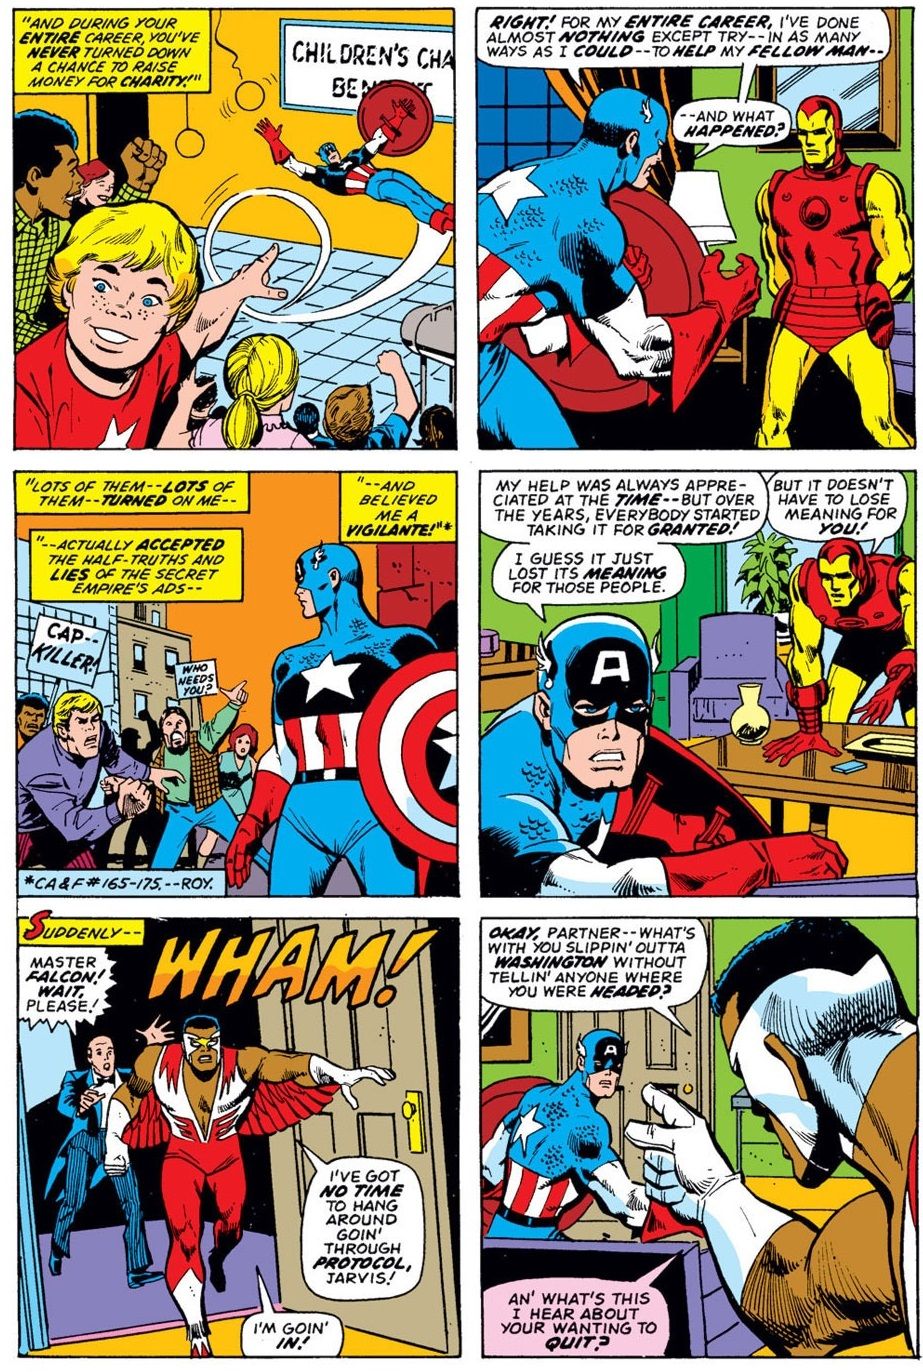 50 лет назад Соединенные Штаты Америки вынудили Капитана Америку уйти из игры